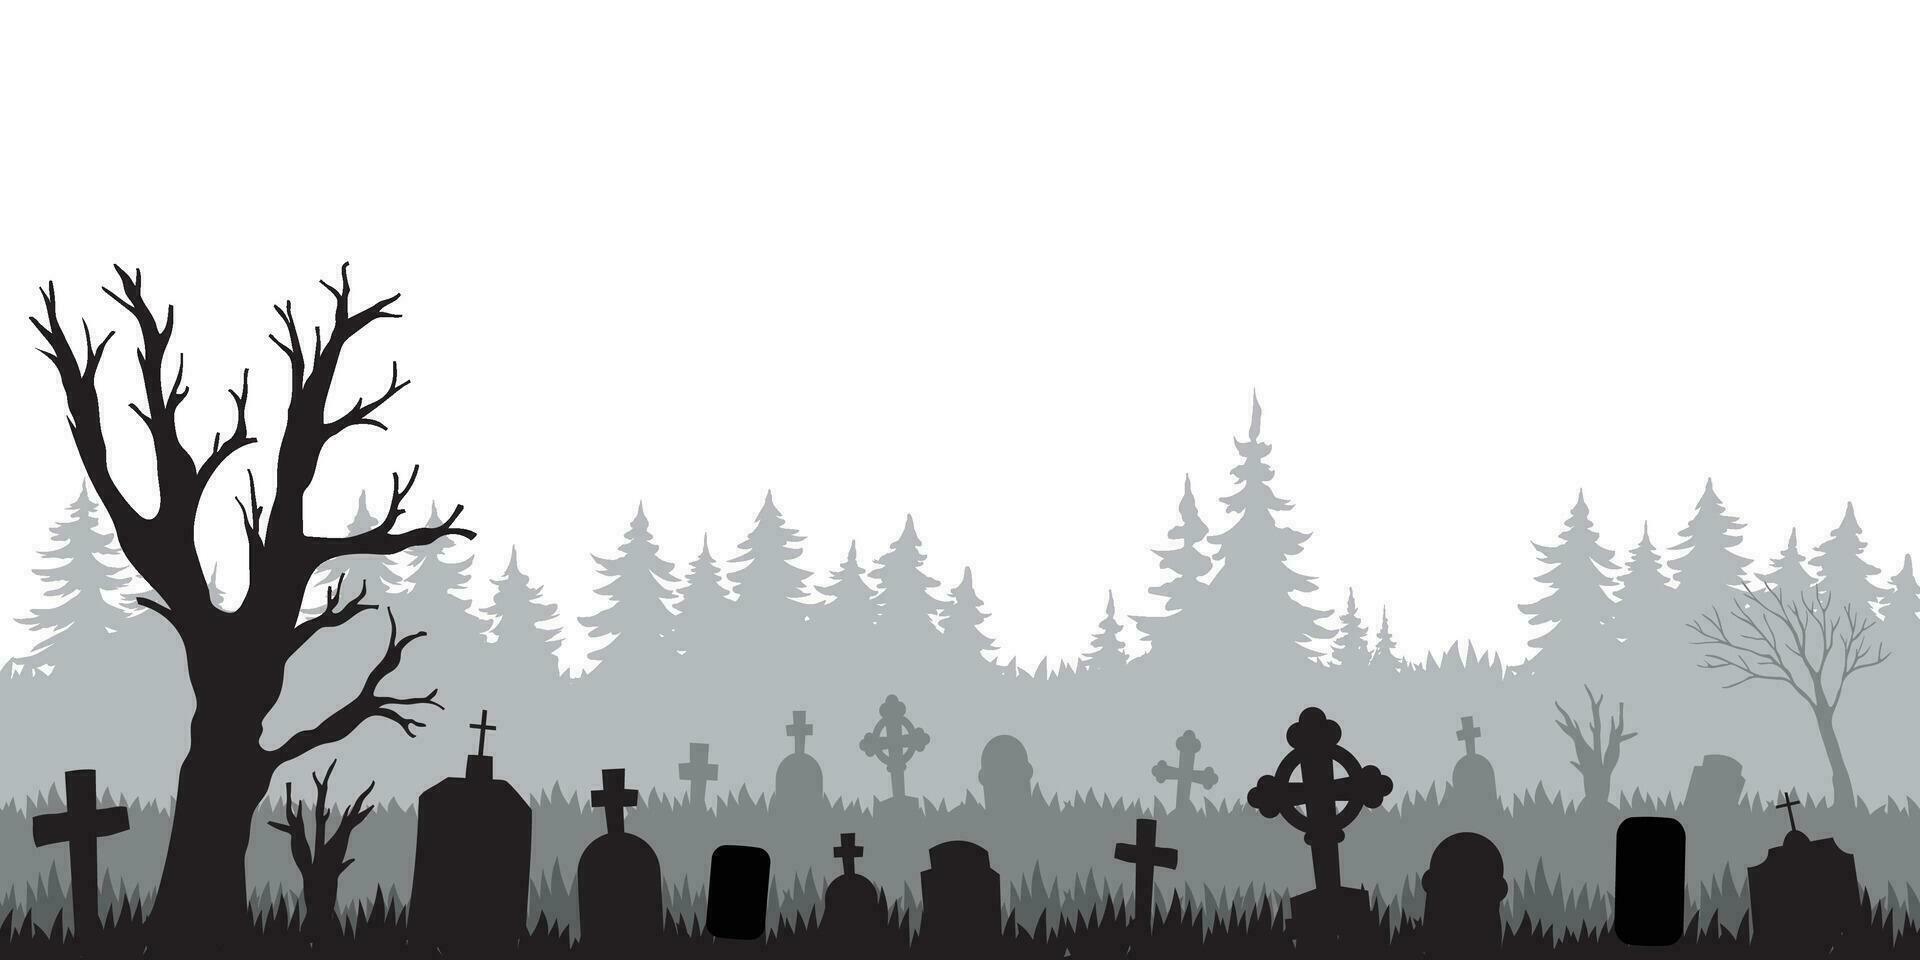 Vektor Illustration von gespenstisch Friedhof Silhouette mit Kopieren Raum Bereich. geeignet zum Hintergrund, Banner, Poster, Halloween Feier, Karte, usw